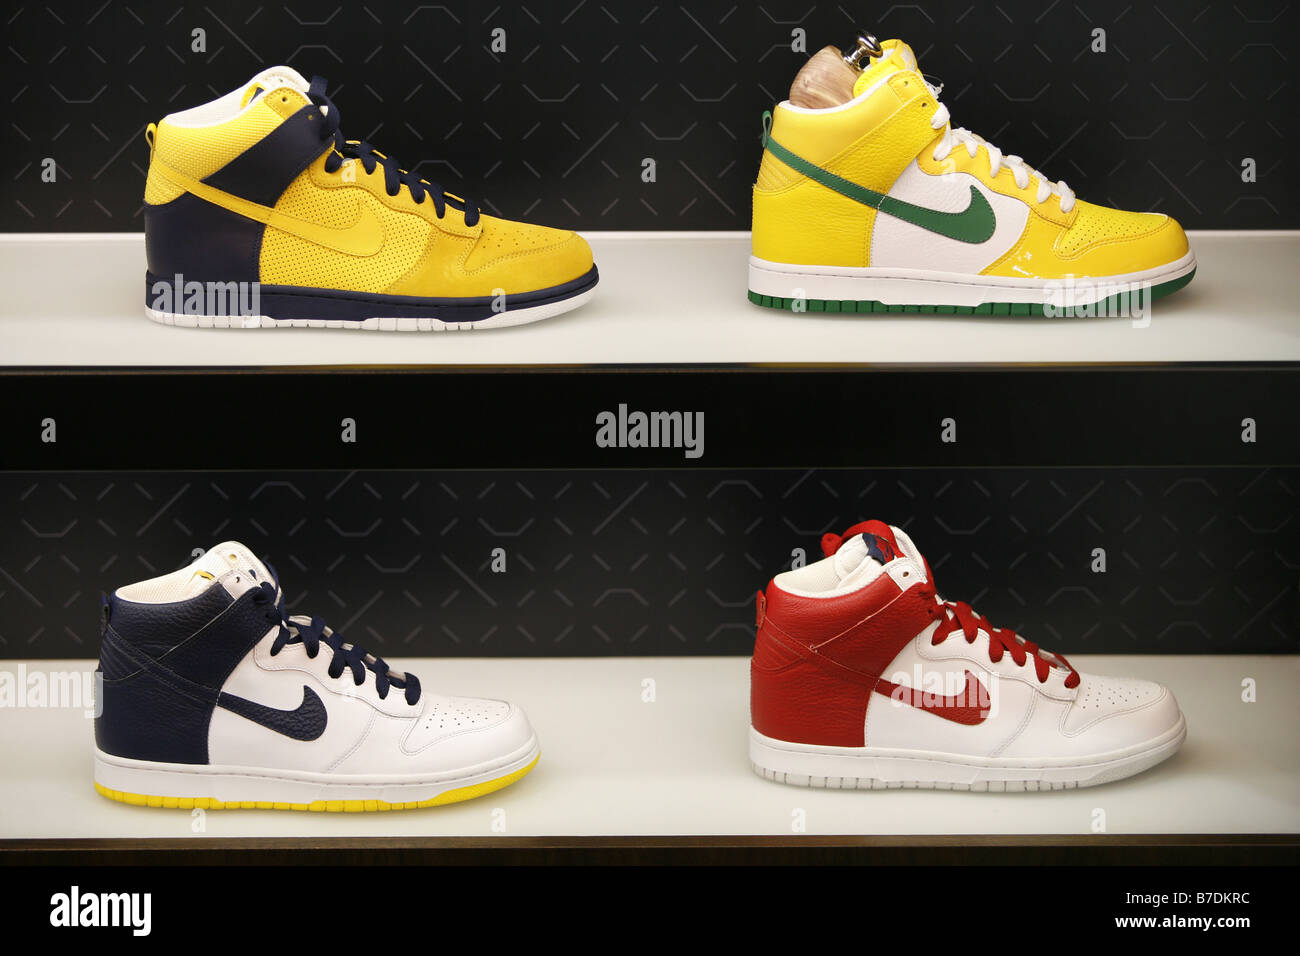 Nike store immagini e fotografie stock ad alta risoluzione - Alamy